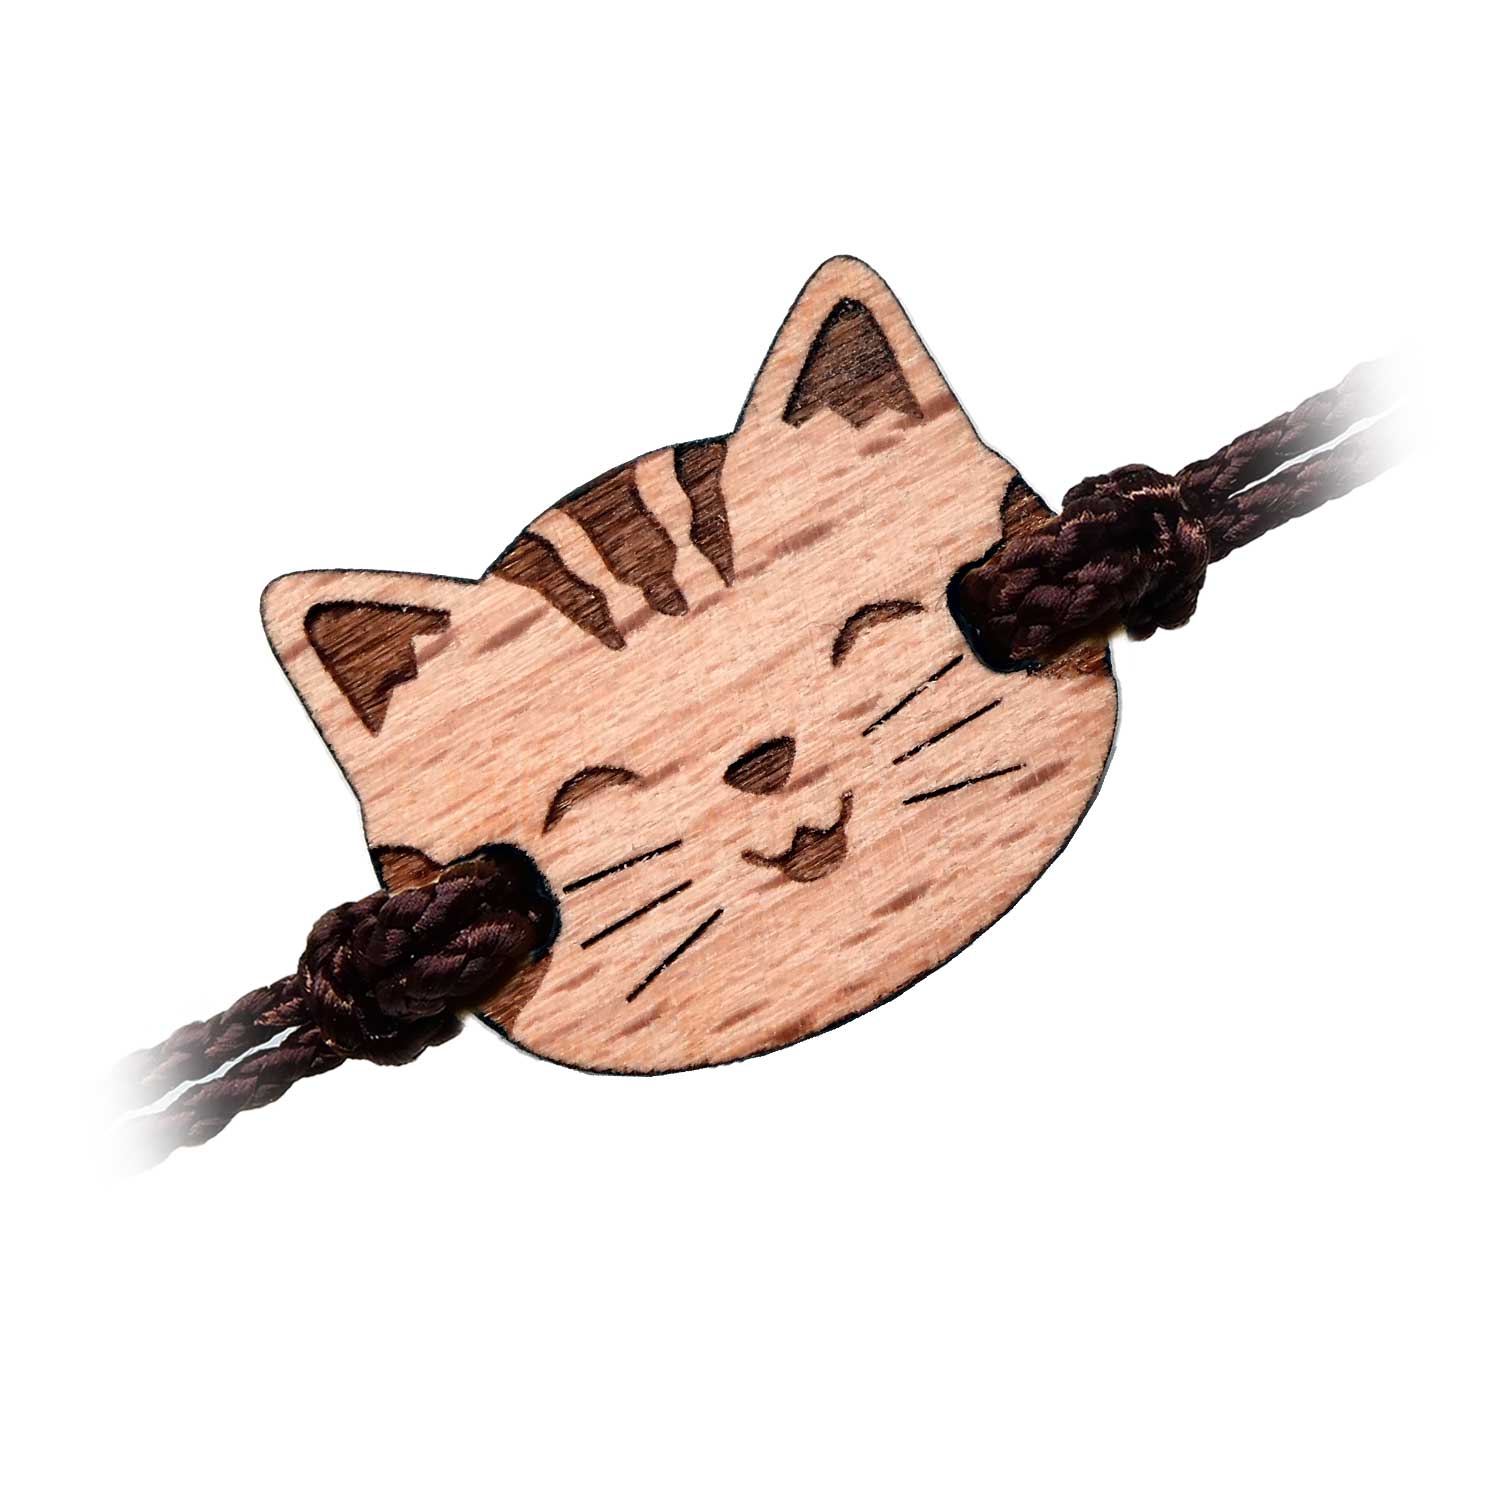 Wooden bracelet for cat child